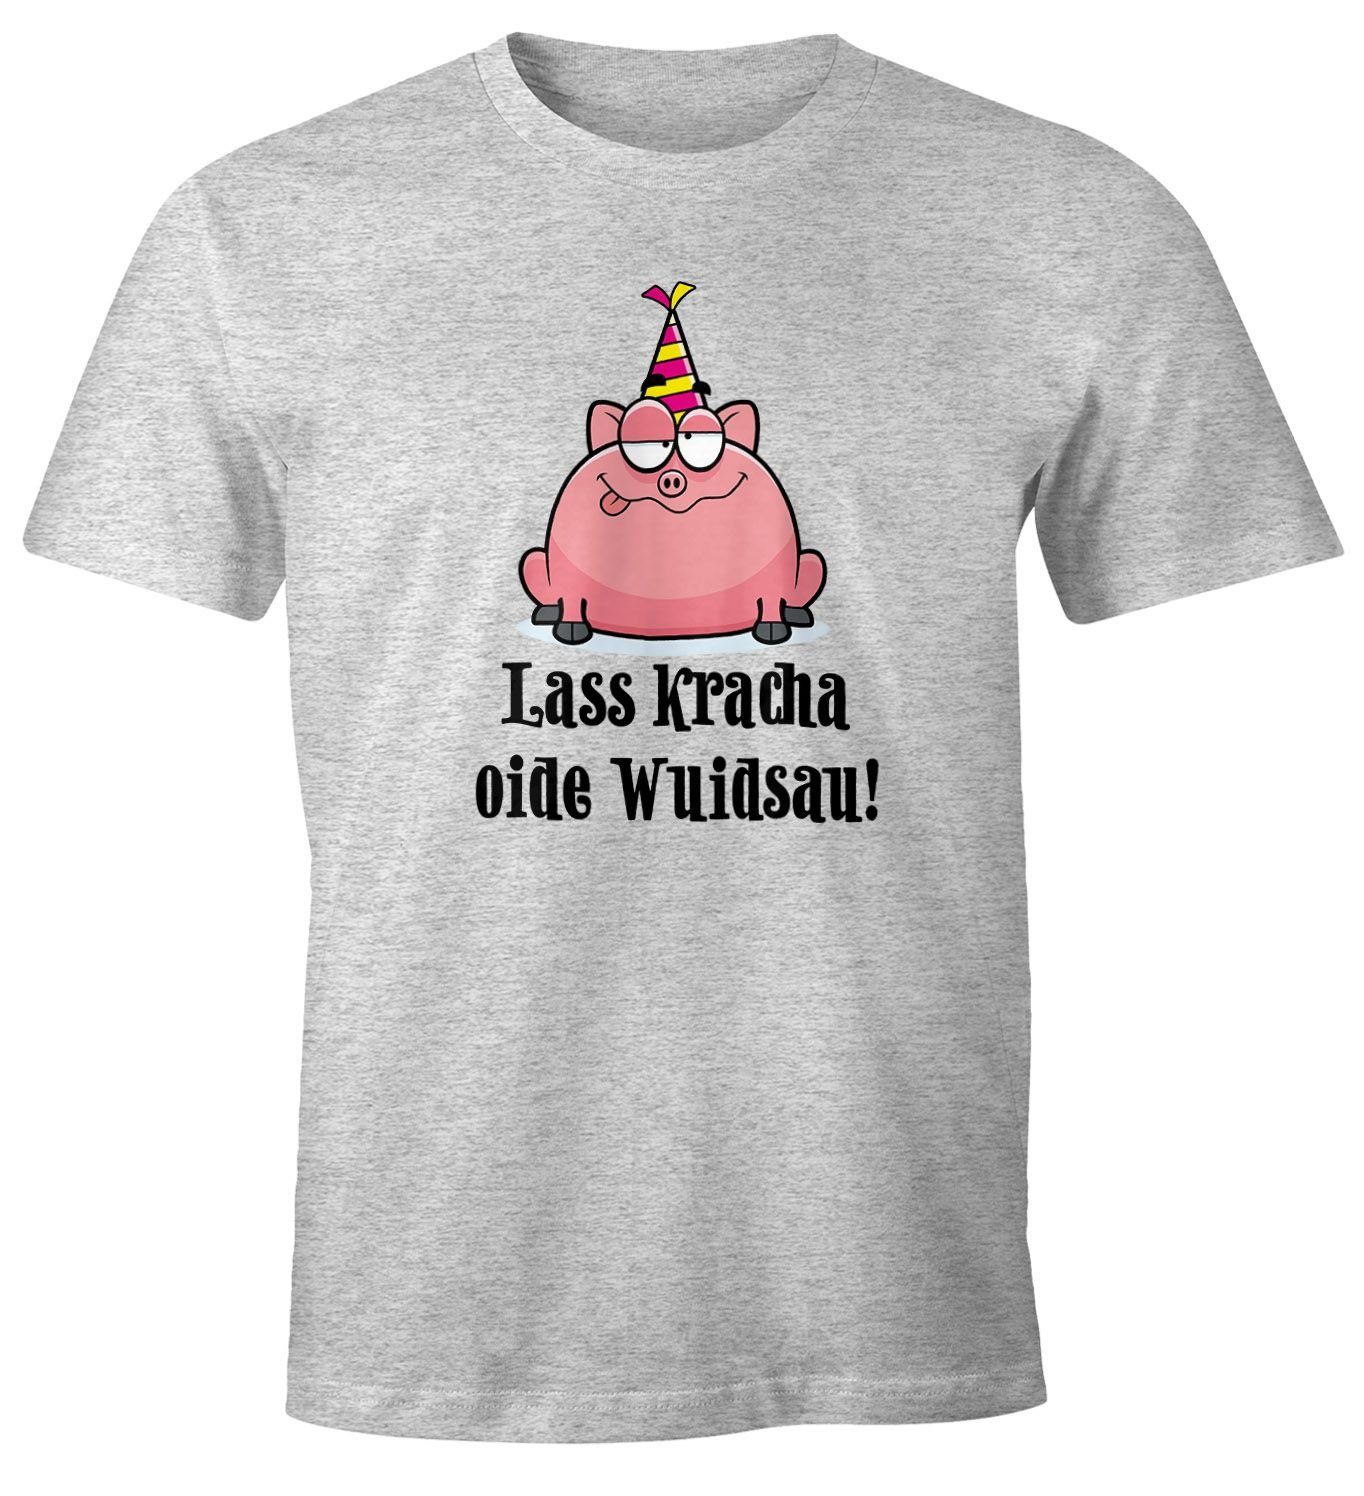 Spruch Print-Shirt grau Geburtstag MoonWorks mit Moonworks® Schwein Herren Geschenk T-Shirt Lass Print oide Fun-Shirt kracha Wuidsau